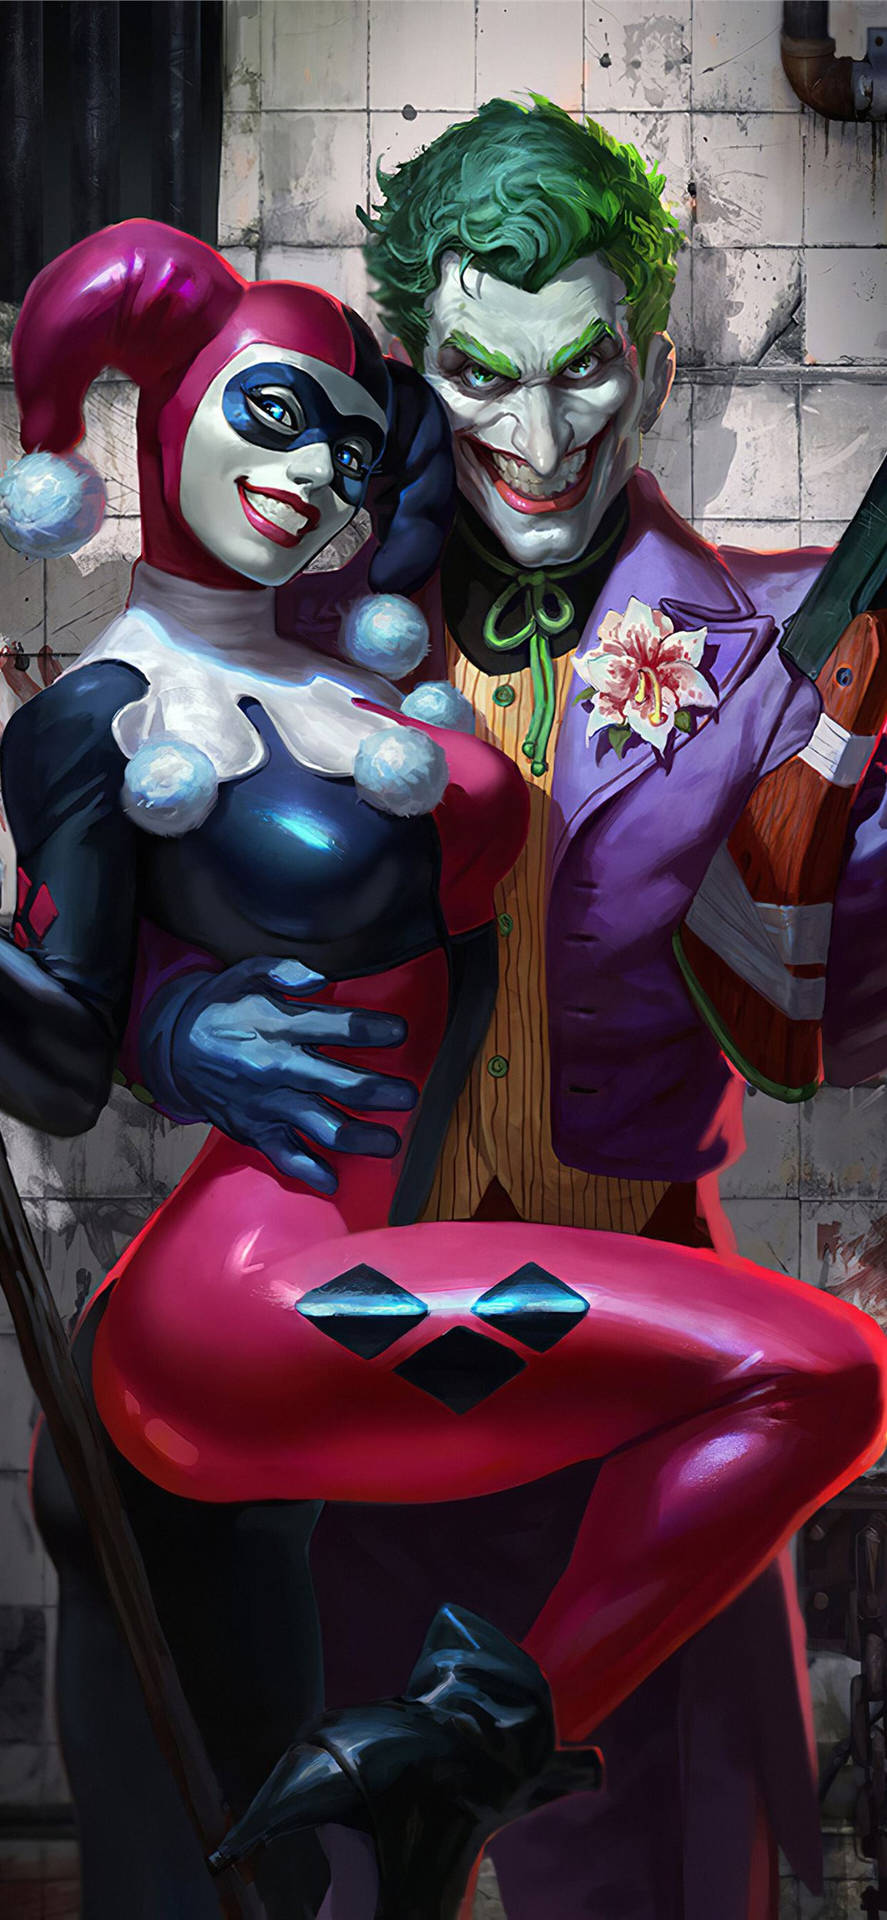 Smiling Joker And Harley Quinn Phone